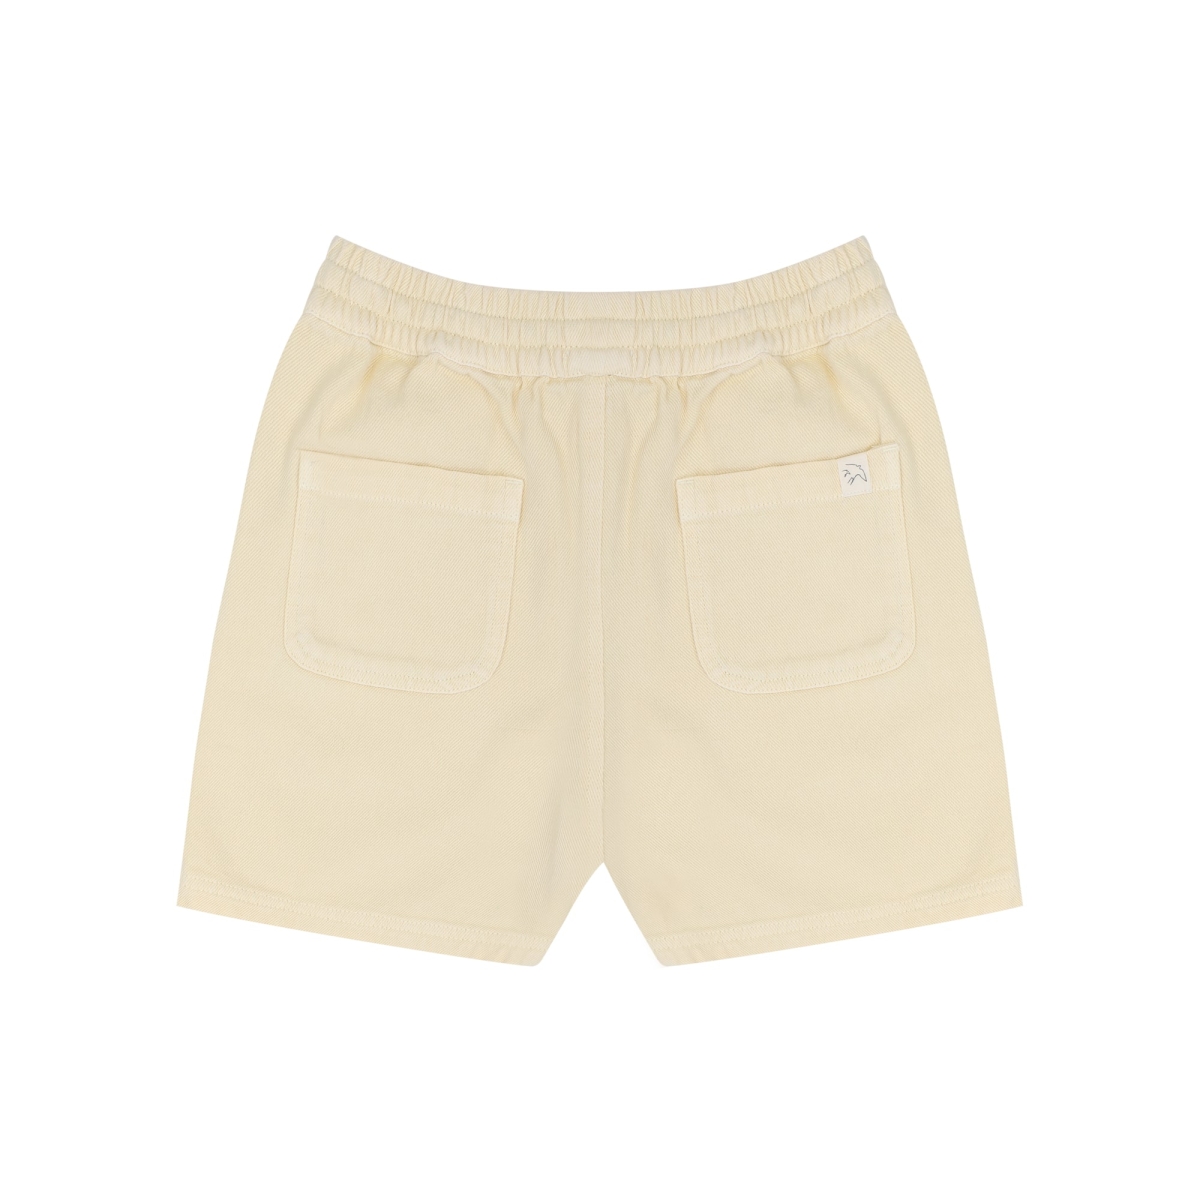 Knoxx shorts Fade Yellow - Jenest